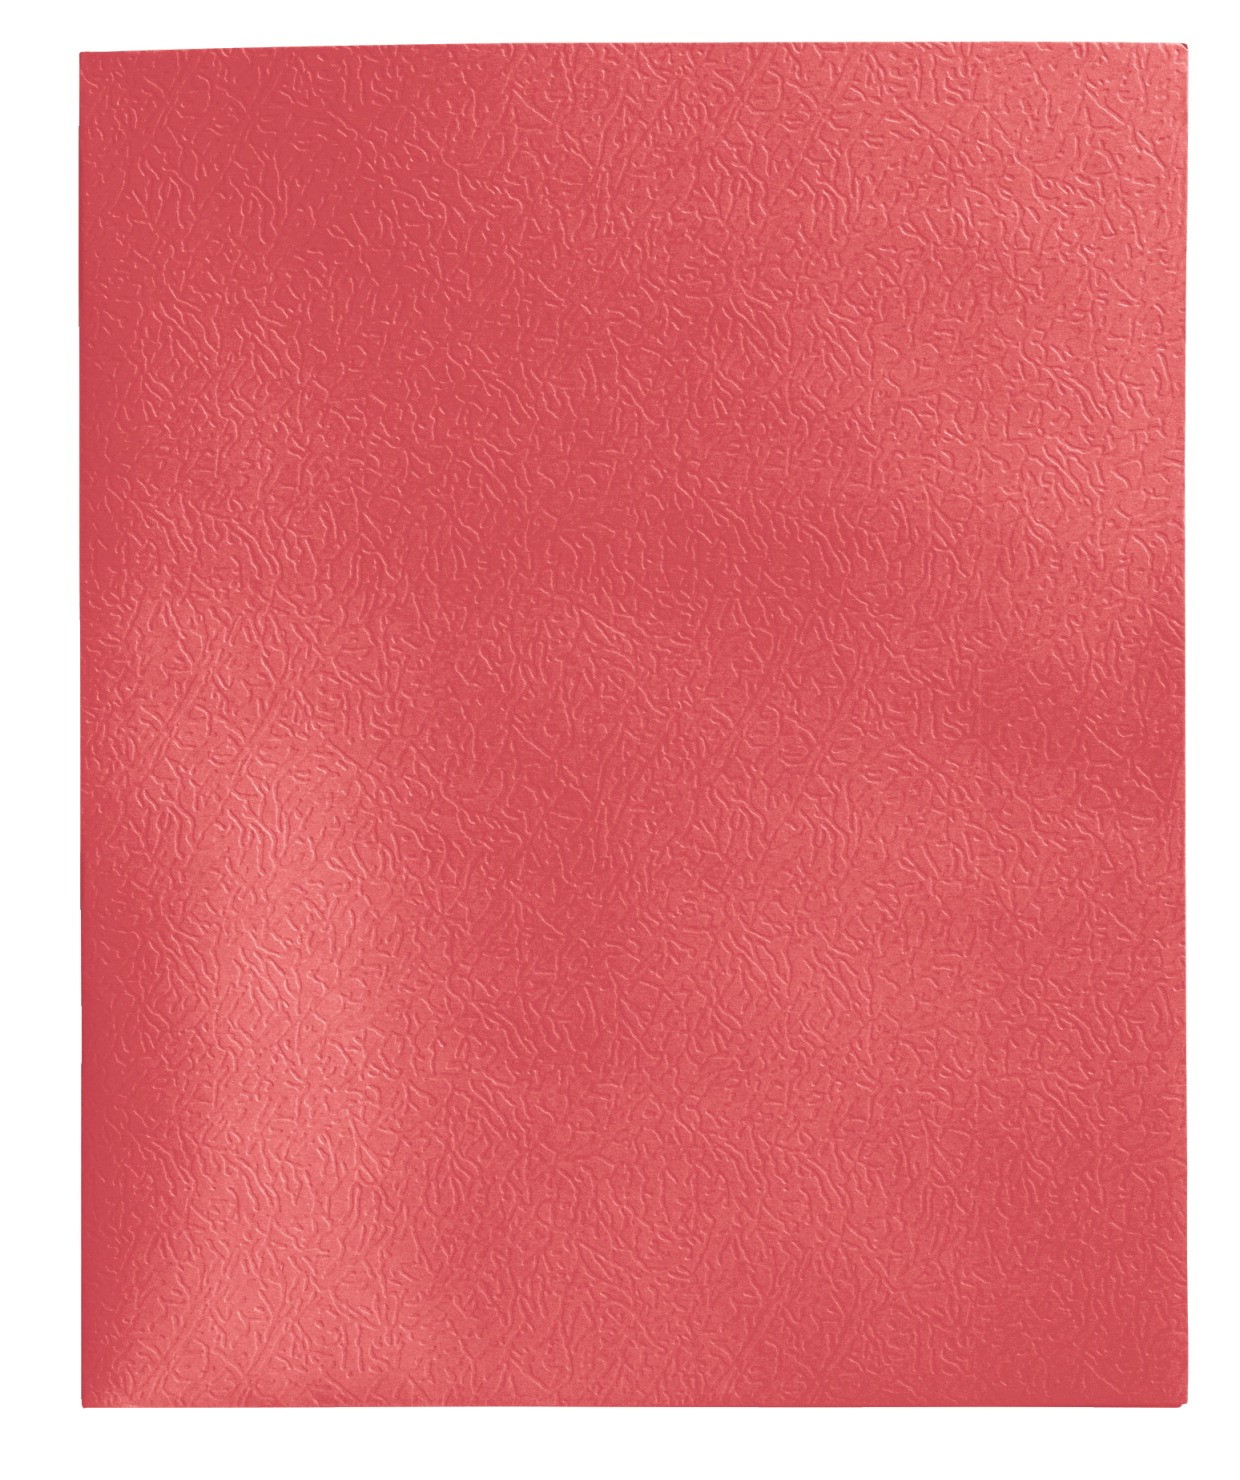 School Smart Extra Large 2-Pocket Folder, Red, Pack of 25